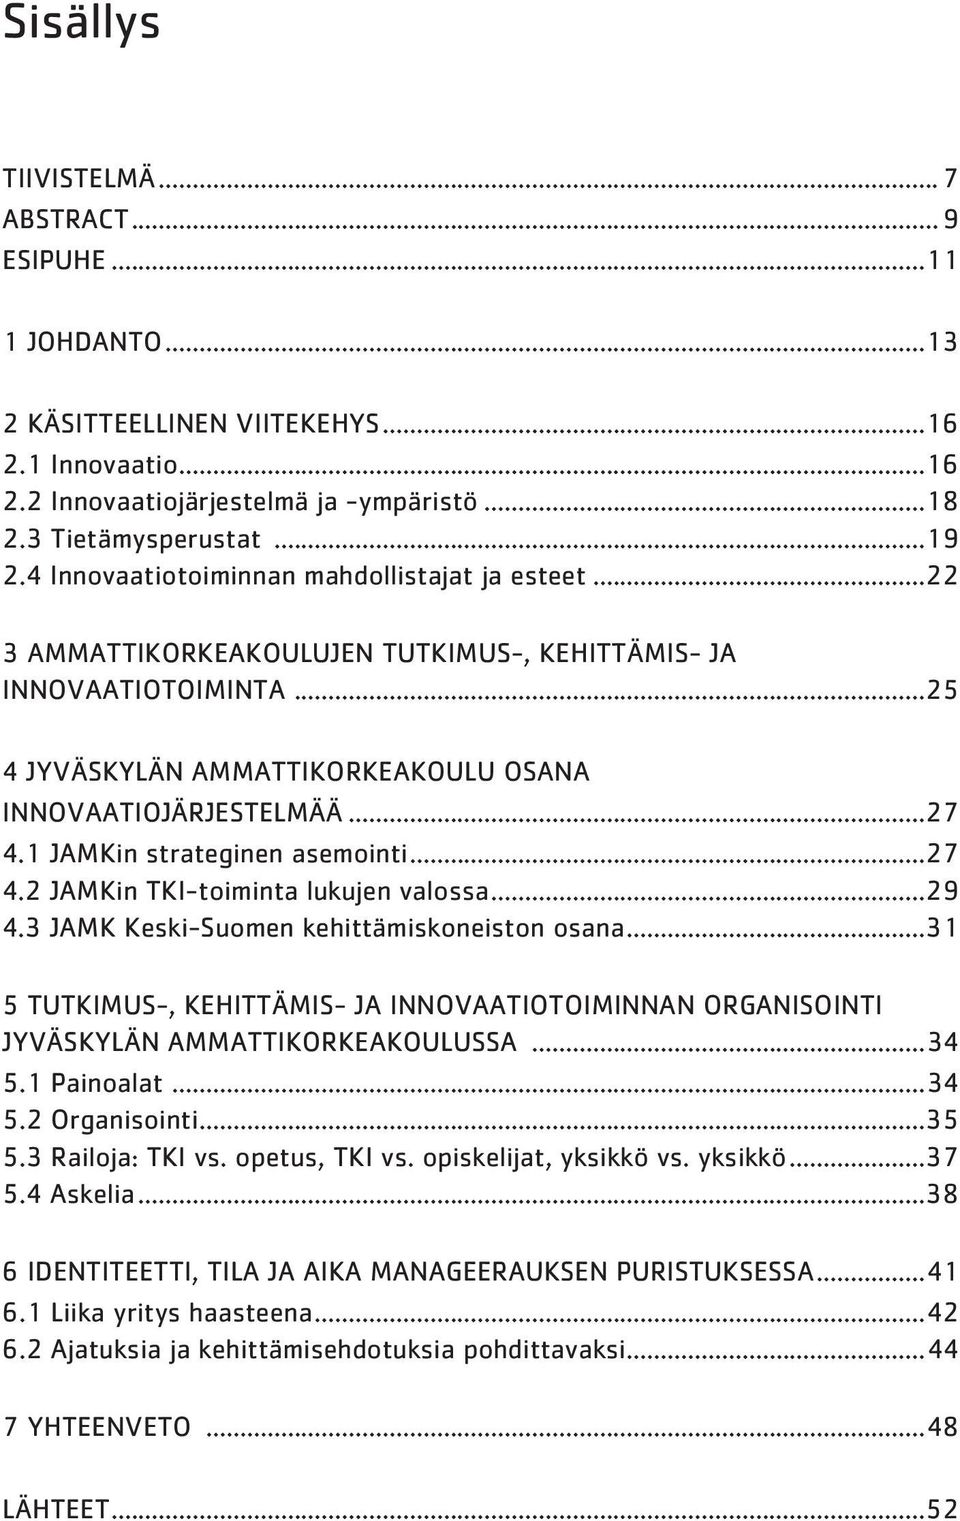 1 JAMKin strateginen asemointi...27 4.2 JAMKin TKI-toiminta lukujen valossa...29 4.3 JAMK Keski-Suomen kehittämiskoneiston osana.